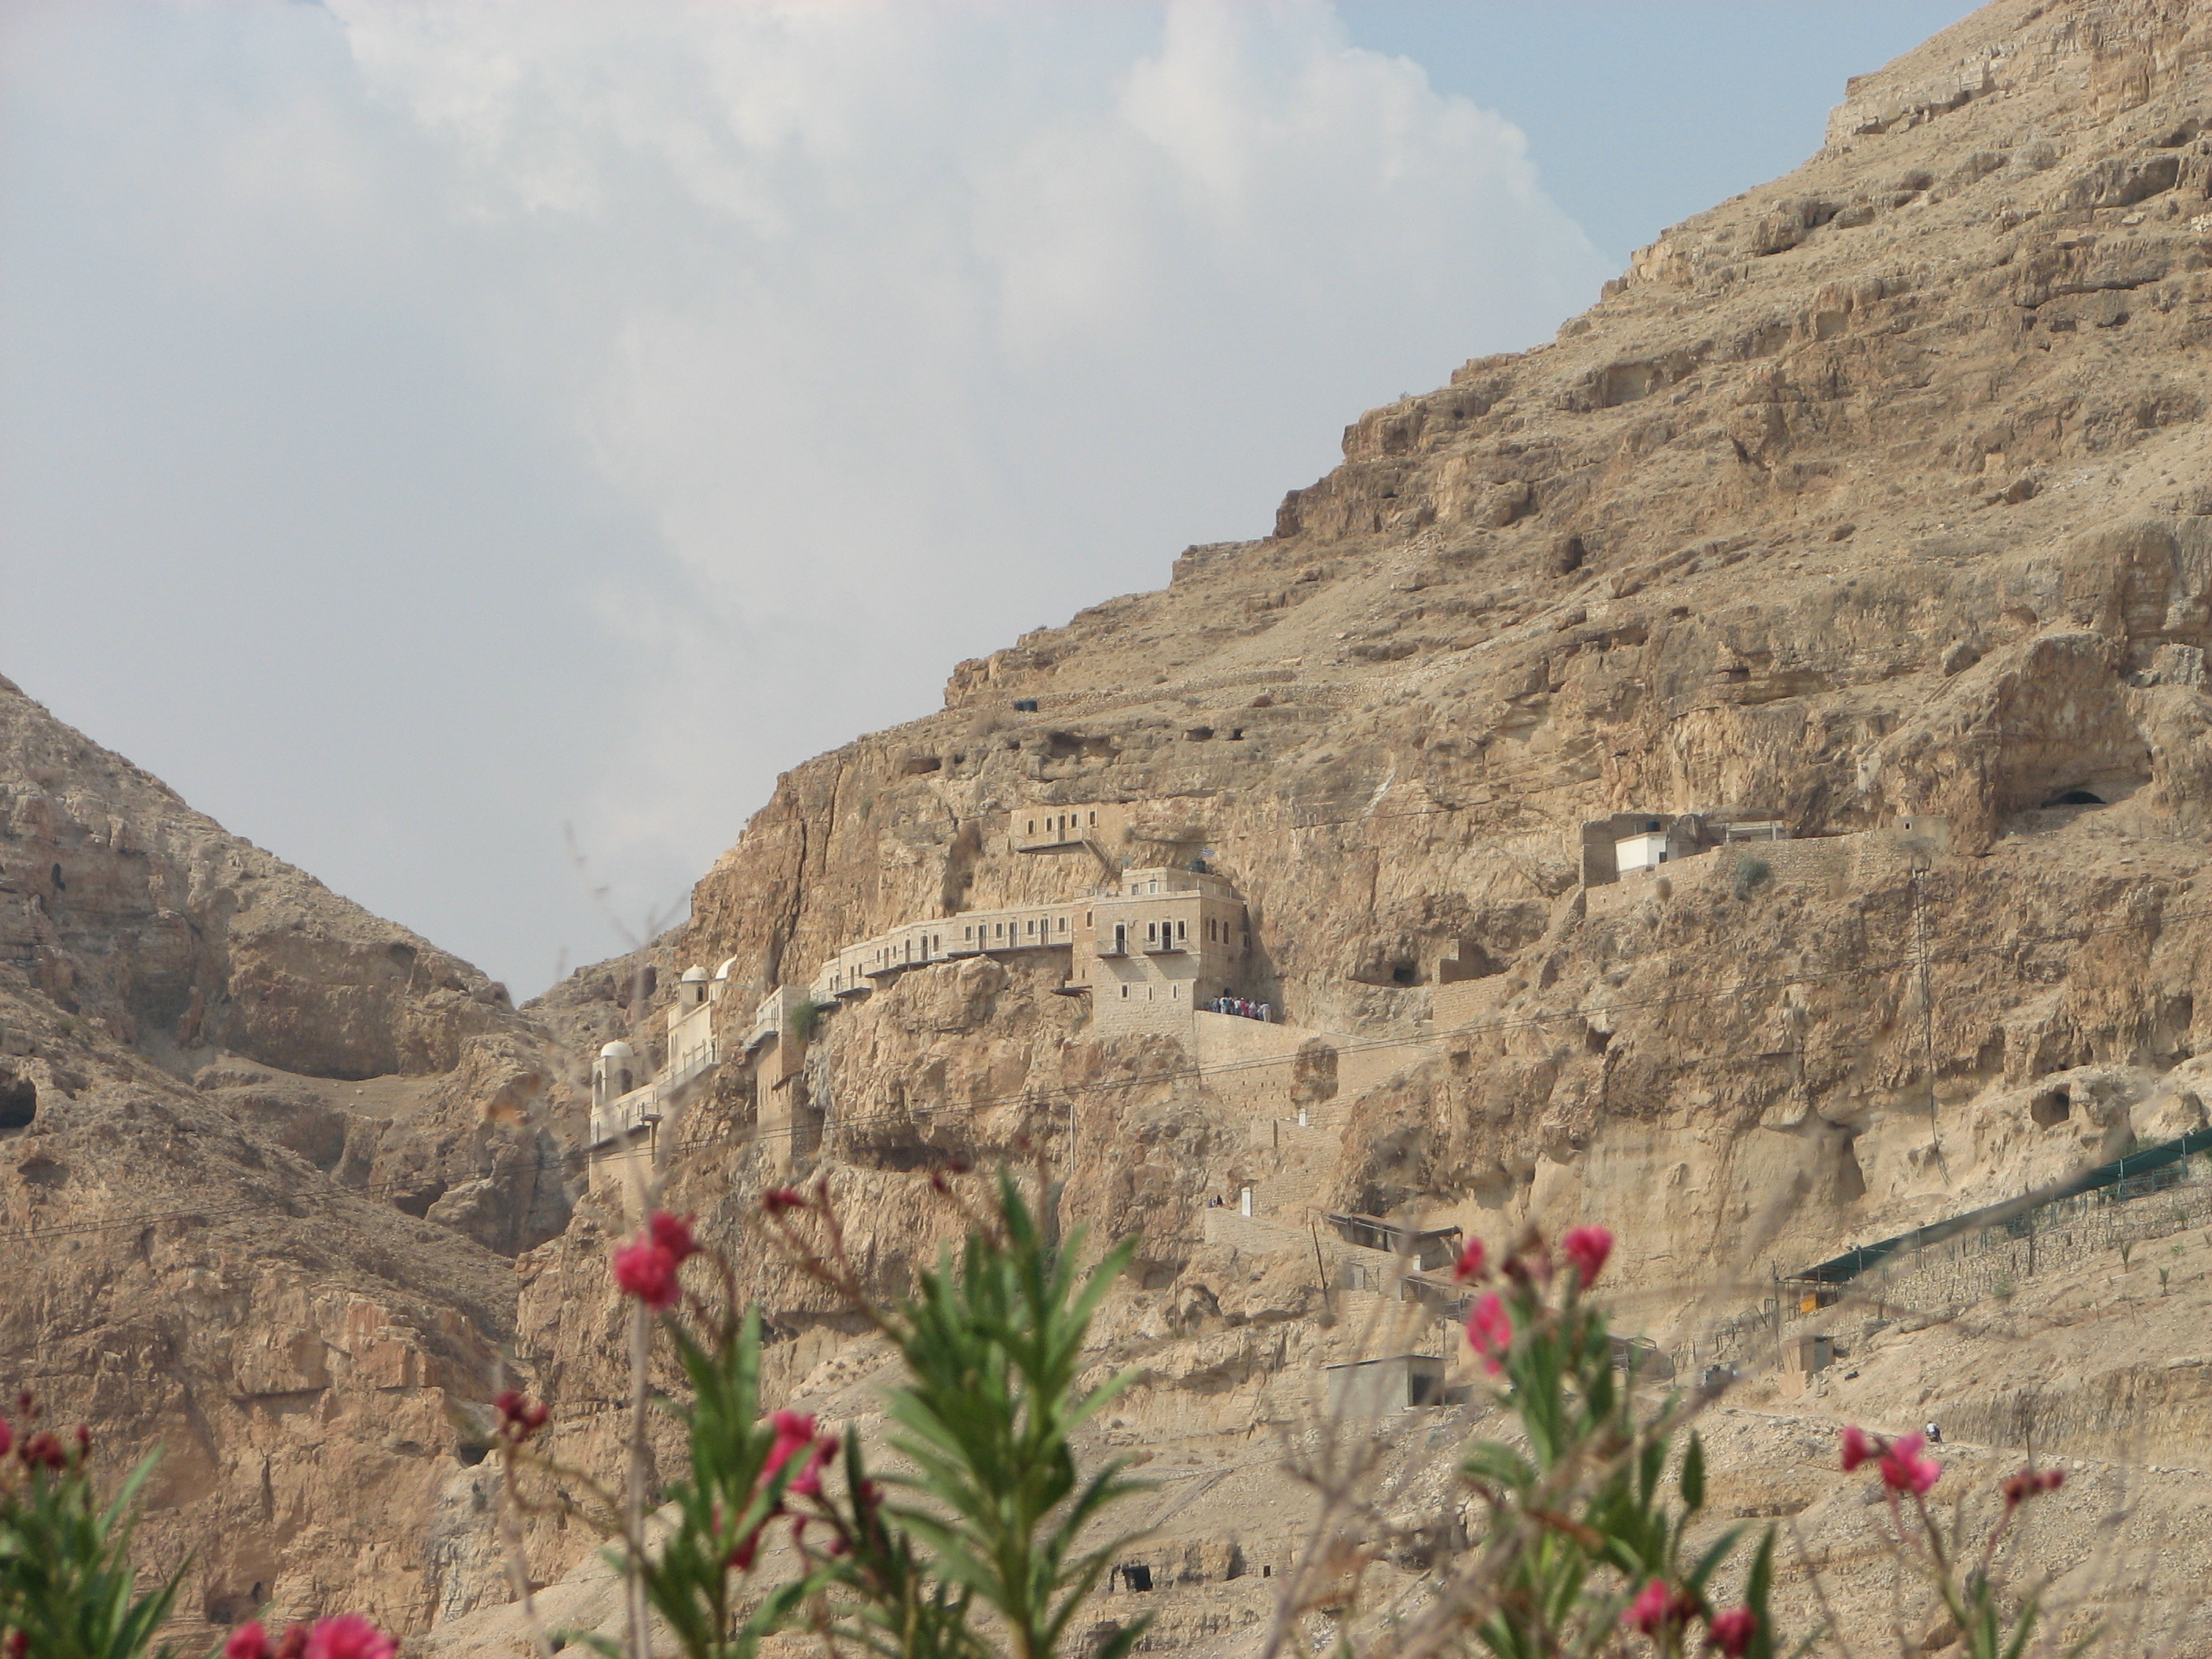 A monastery near Jericho, near the mount of temptation